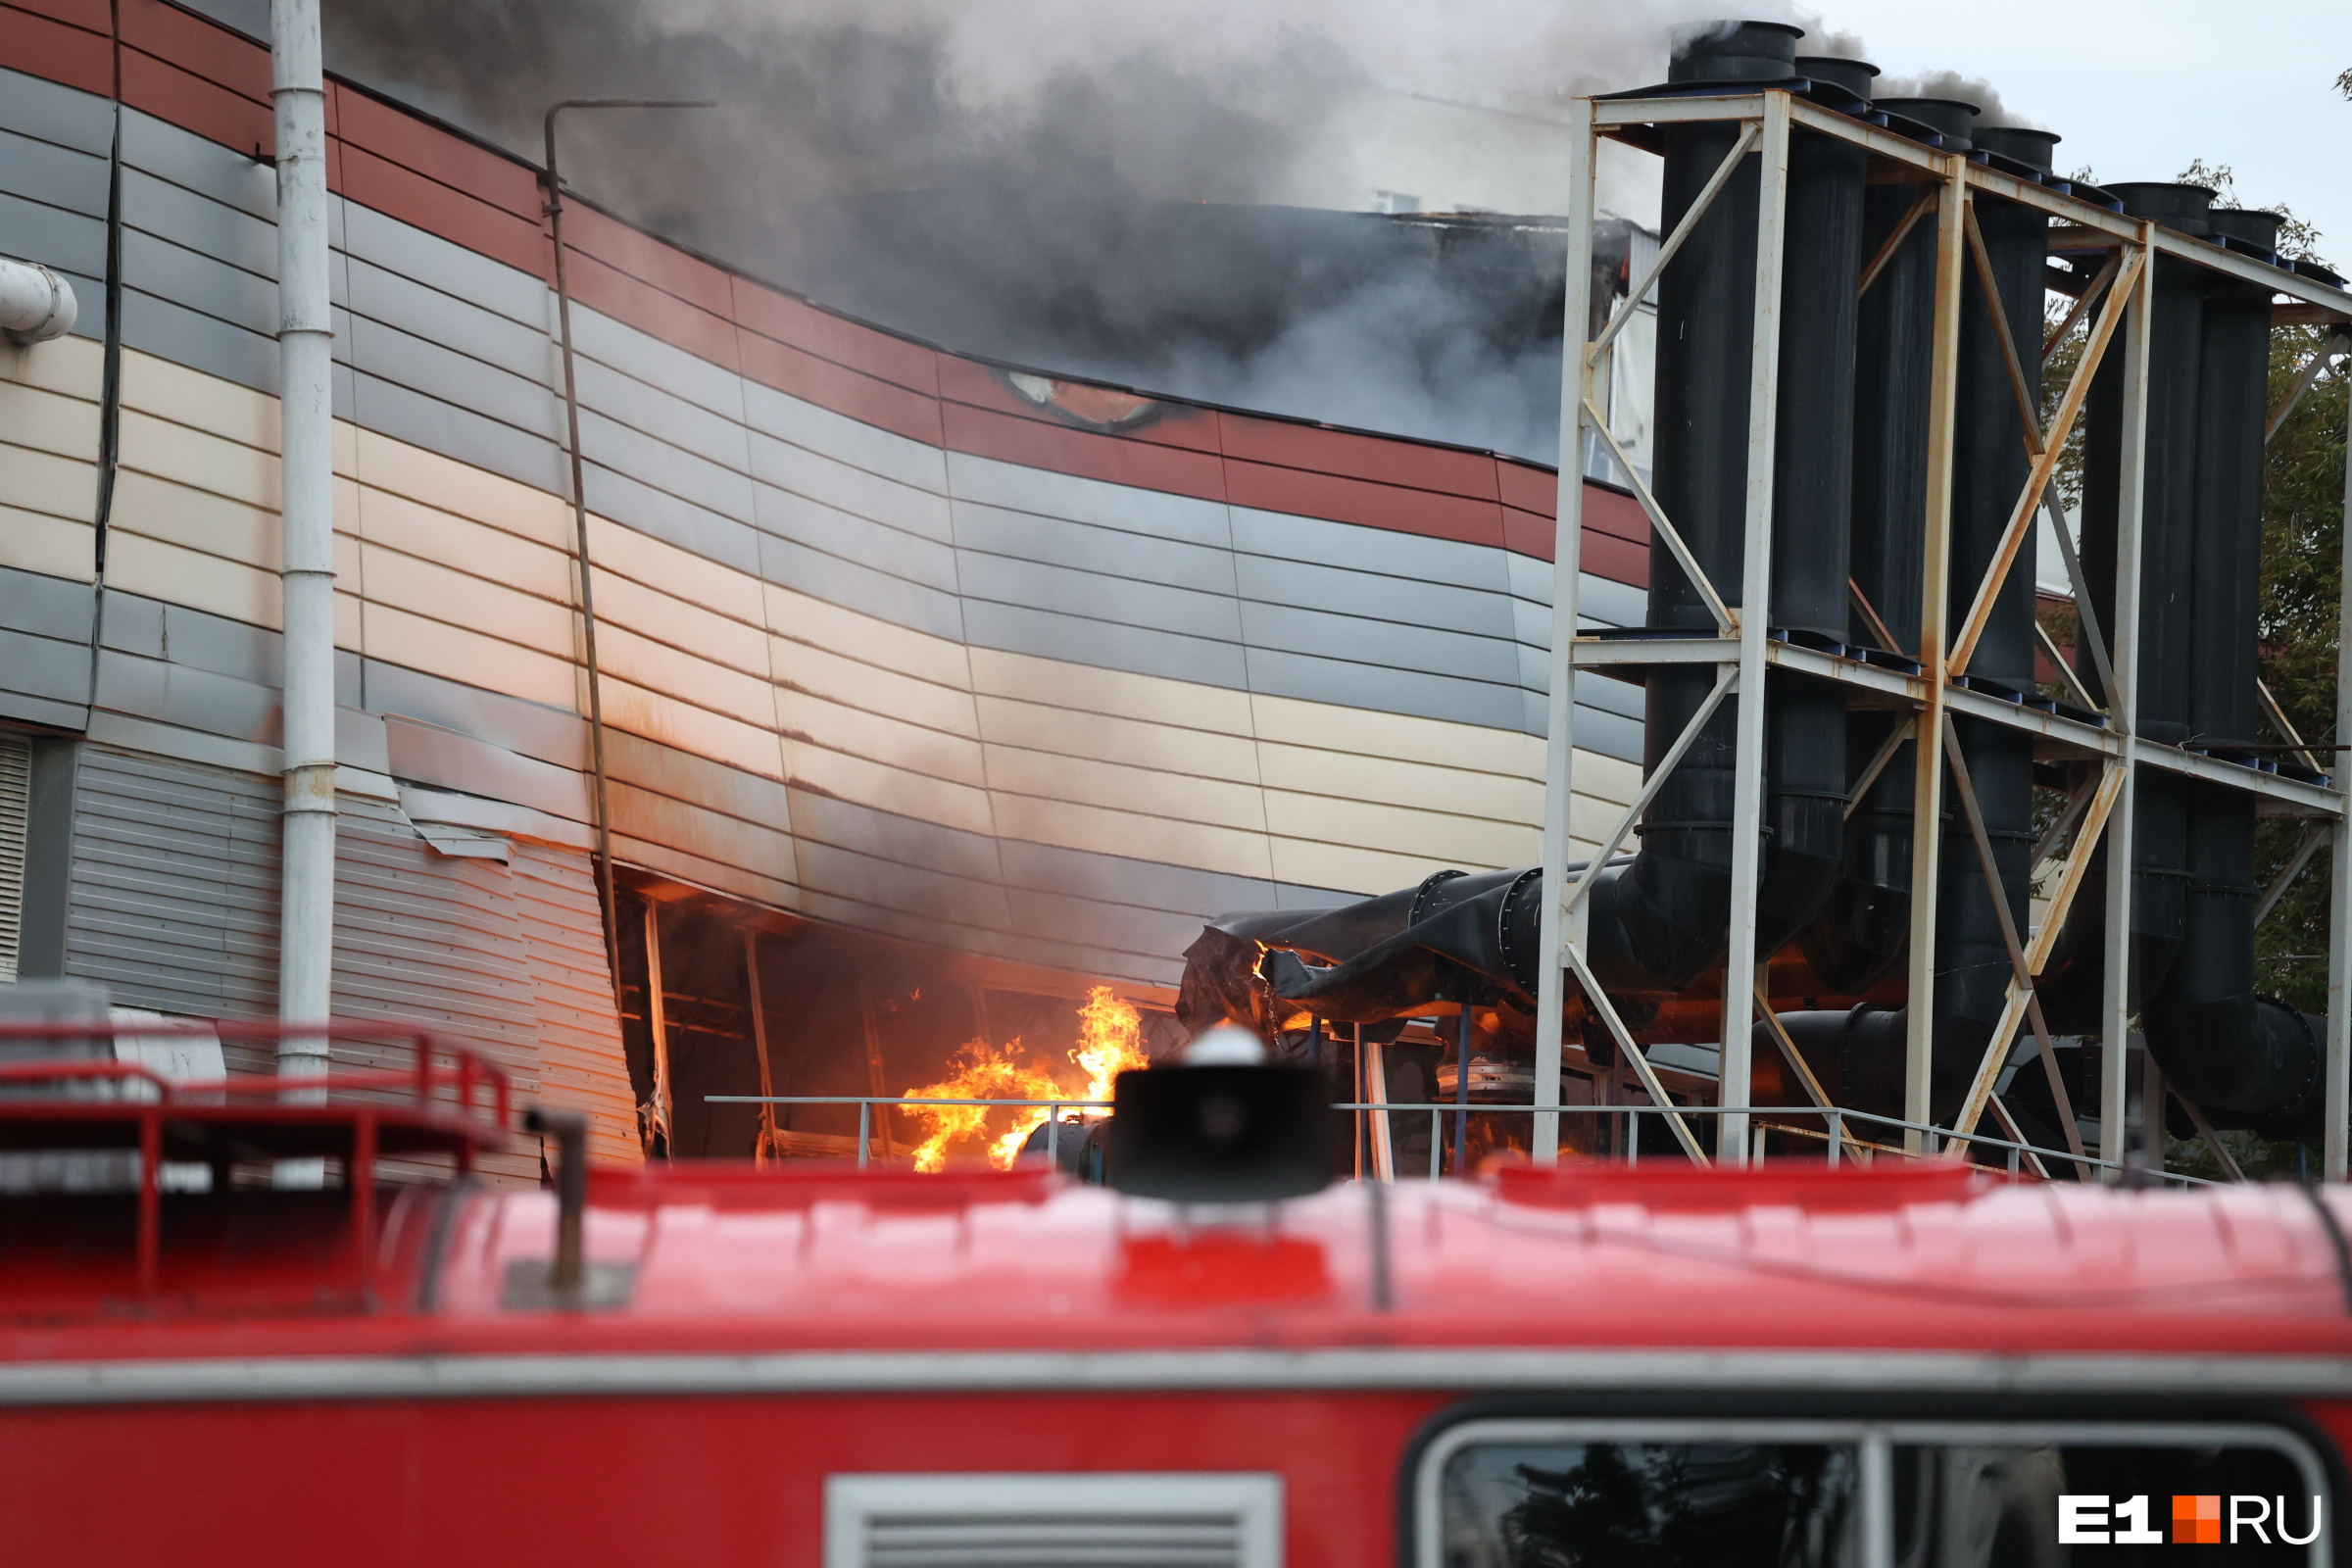 «Ситуация под контролем». В Екатеринбурге огонь охватил известный завод: онлайн